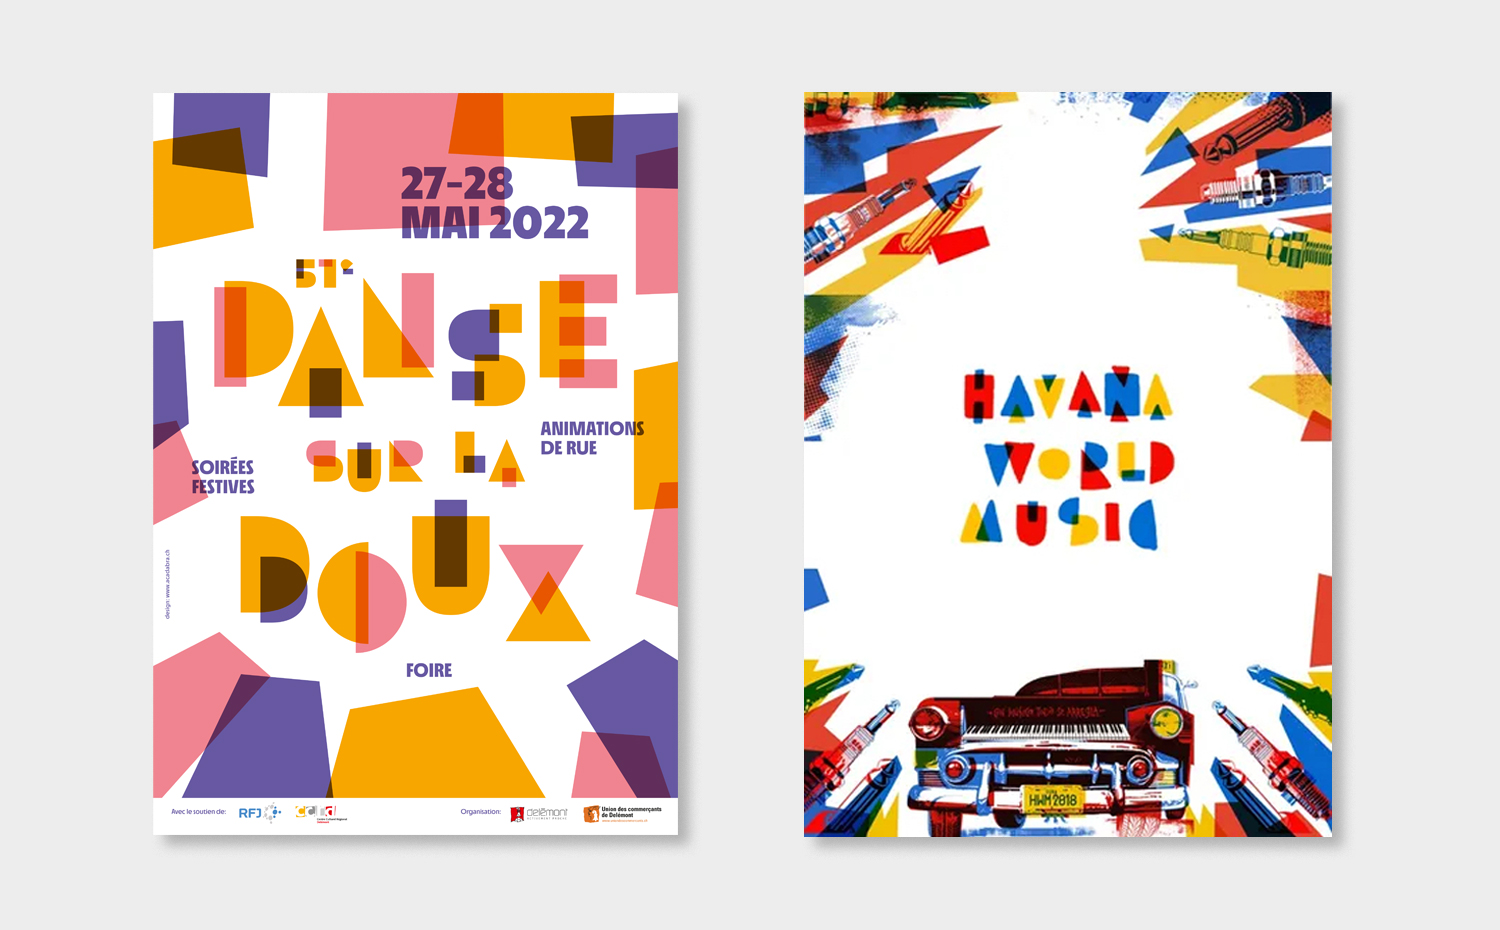 Afiches de la Danse sur la Doux (Suiza) y del Havana World Music Festival.